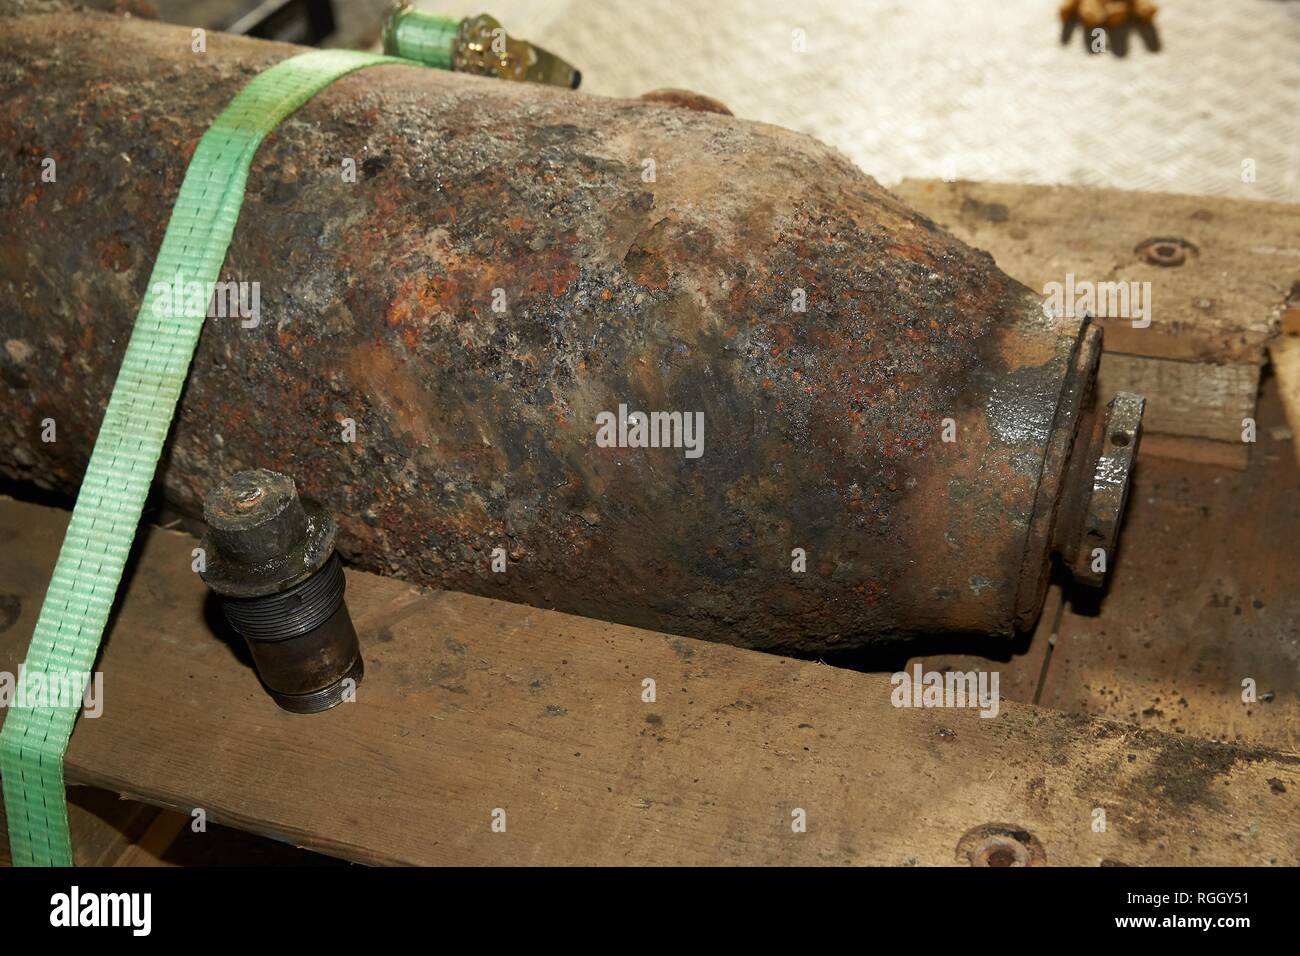 Dud bomb, defusing a World War Bomb at Mayener Ostbahnhof, Mayen, Rhineland-Palatinate, Germany Stock Photo